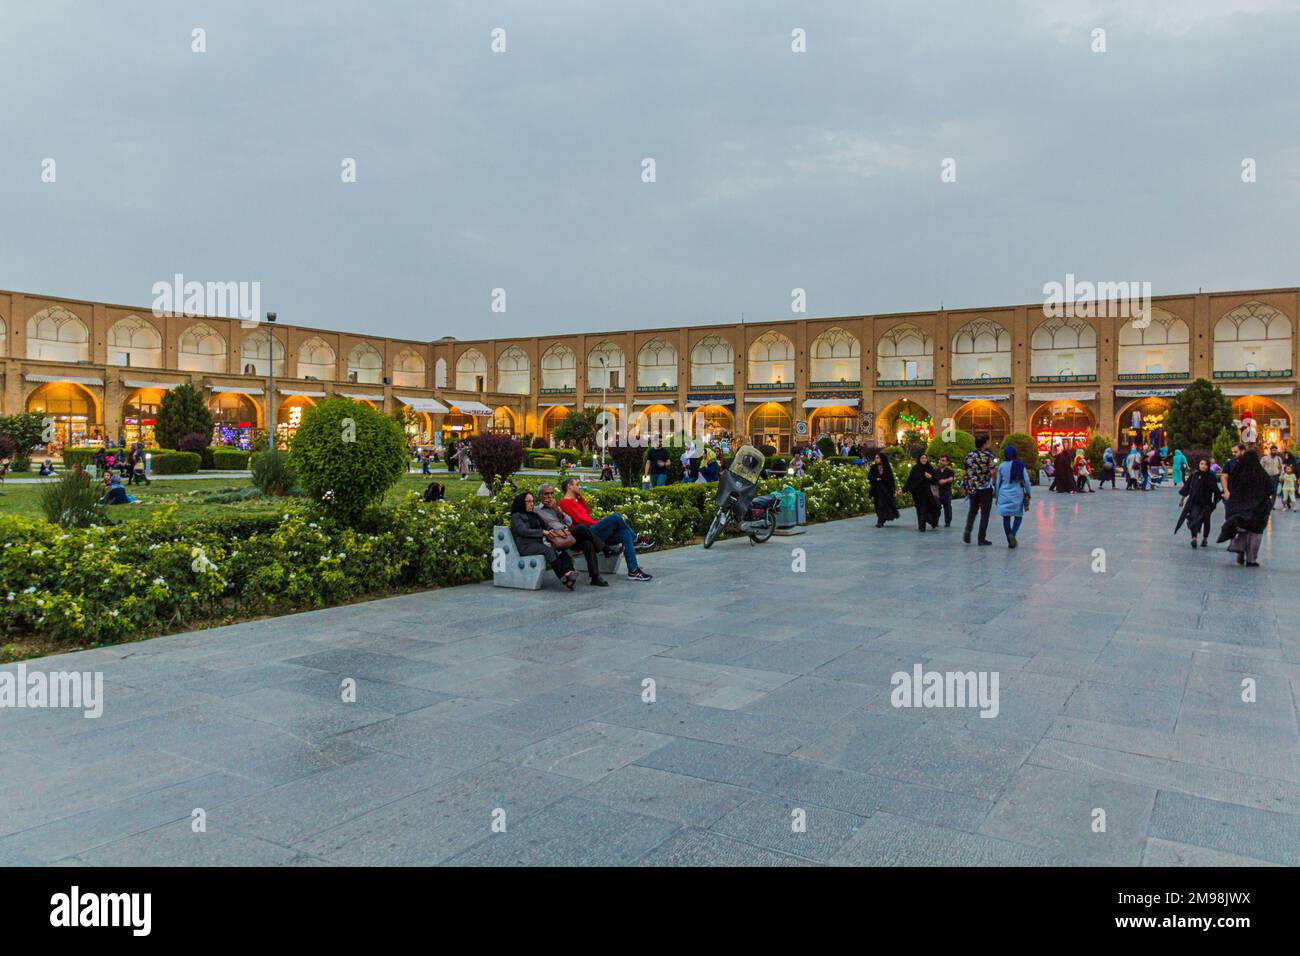 ISFAHAN, IRAN - JULY 10, 2019: People enjoying evening at Naqsh-e Jahan Square in Isfahan, Iran Stock Photo